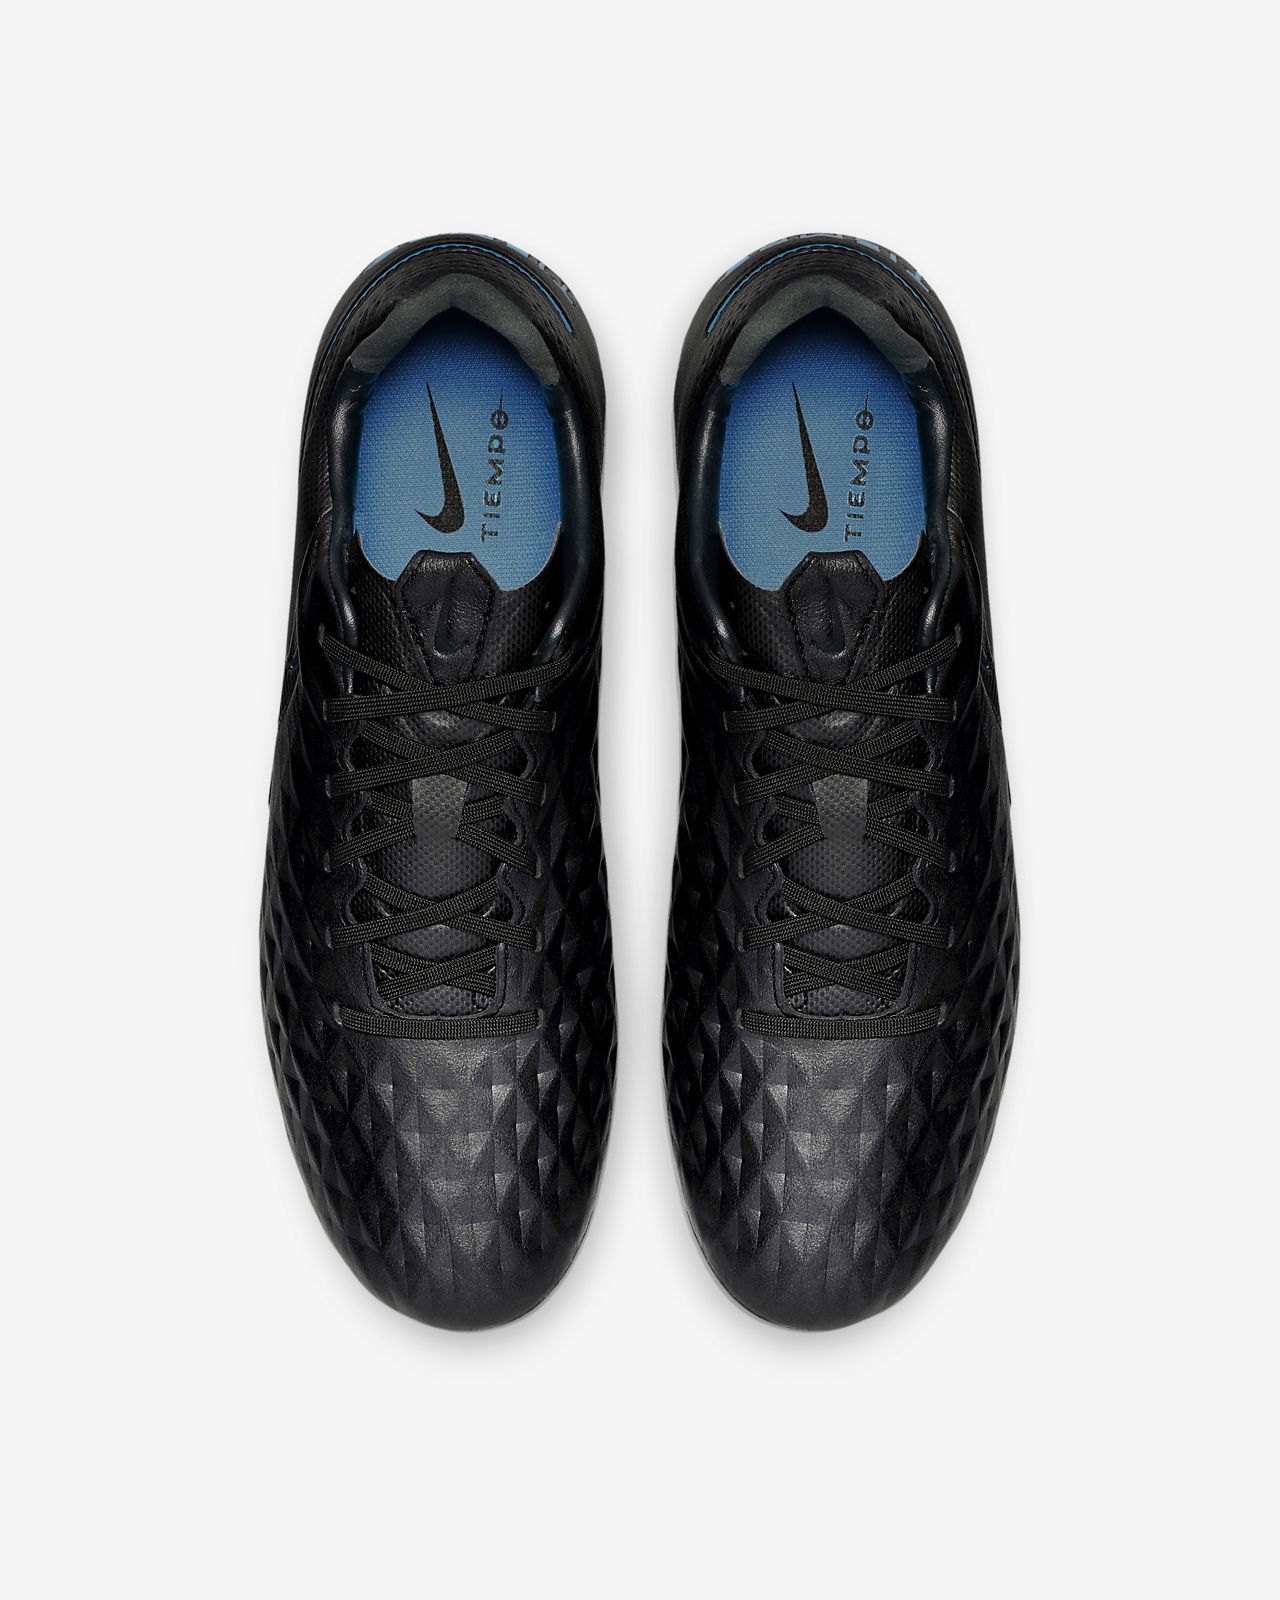 Buy Black / Blue Nike Tiempo Legend VI 2017 Boots Released